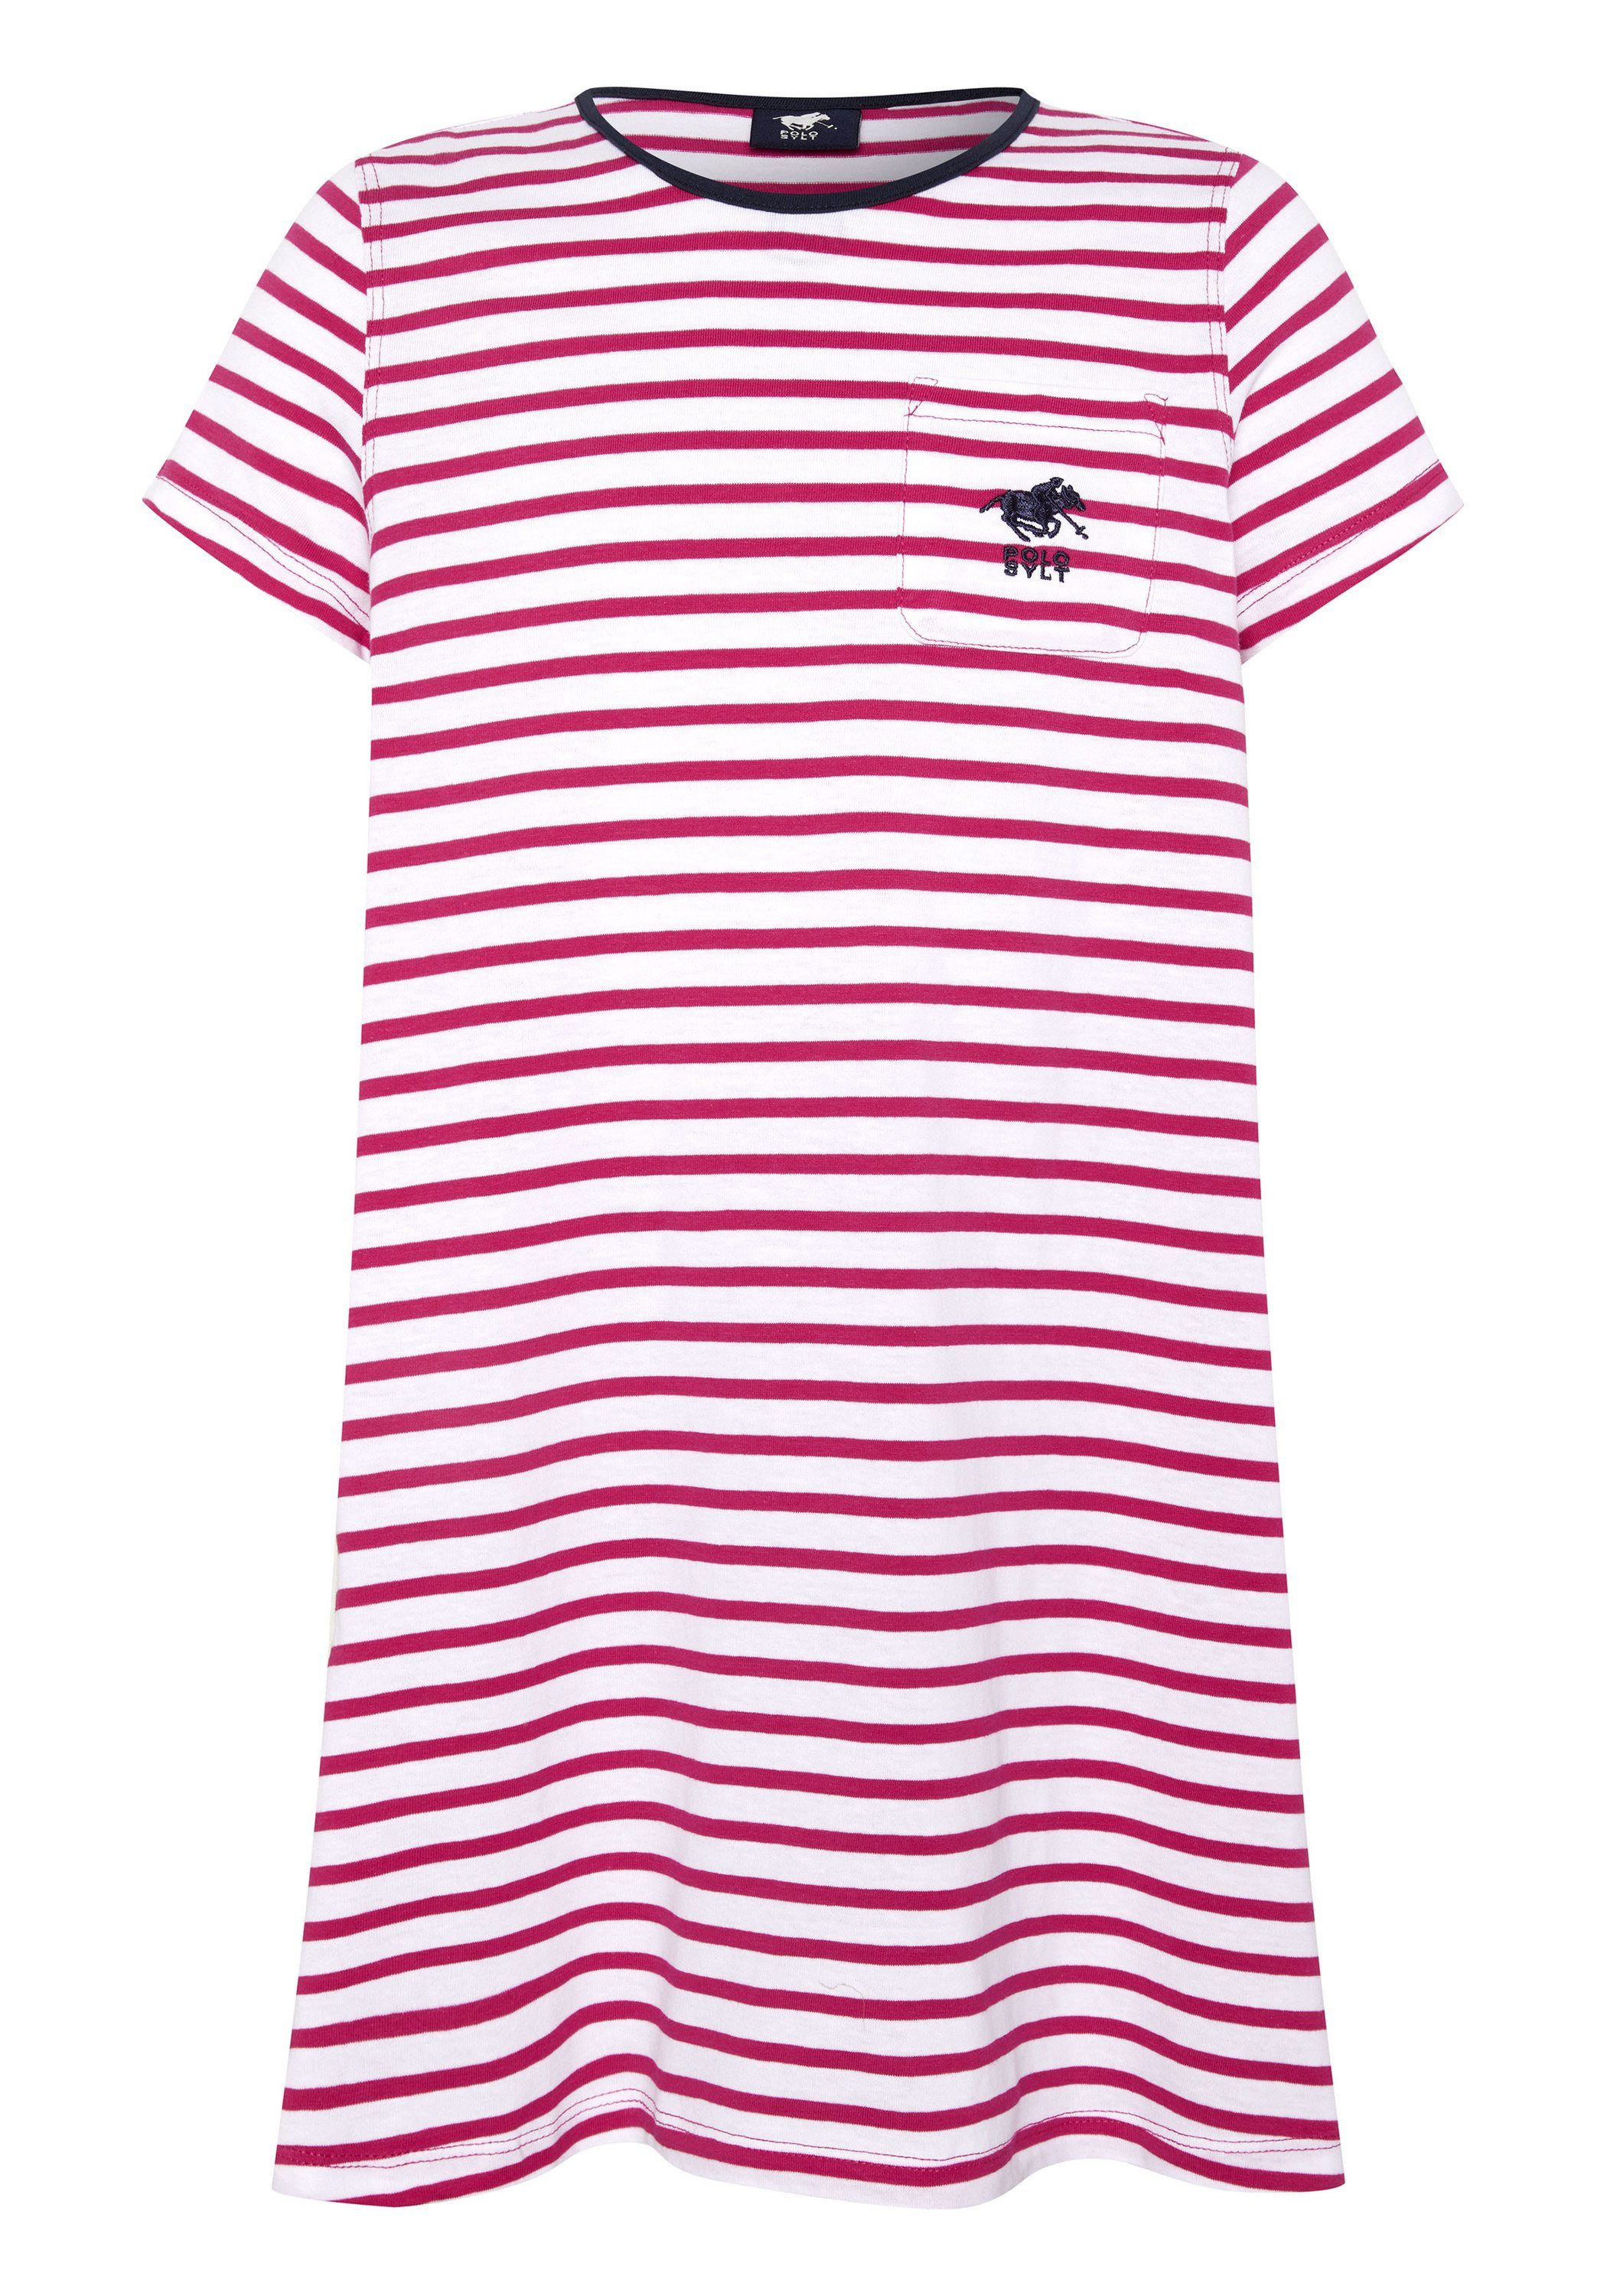 Polo Sylt Jerseykleid im Streifen Design 2910 Pink/White